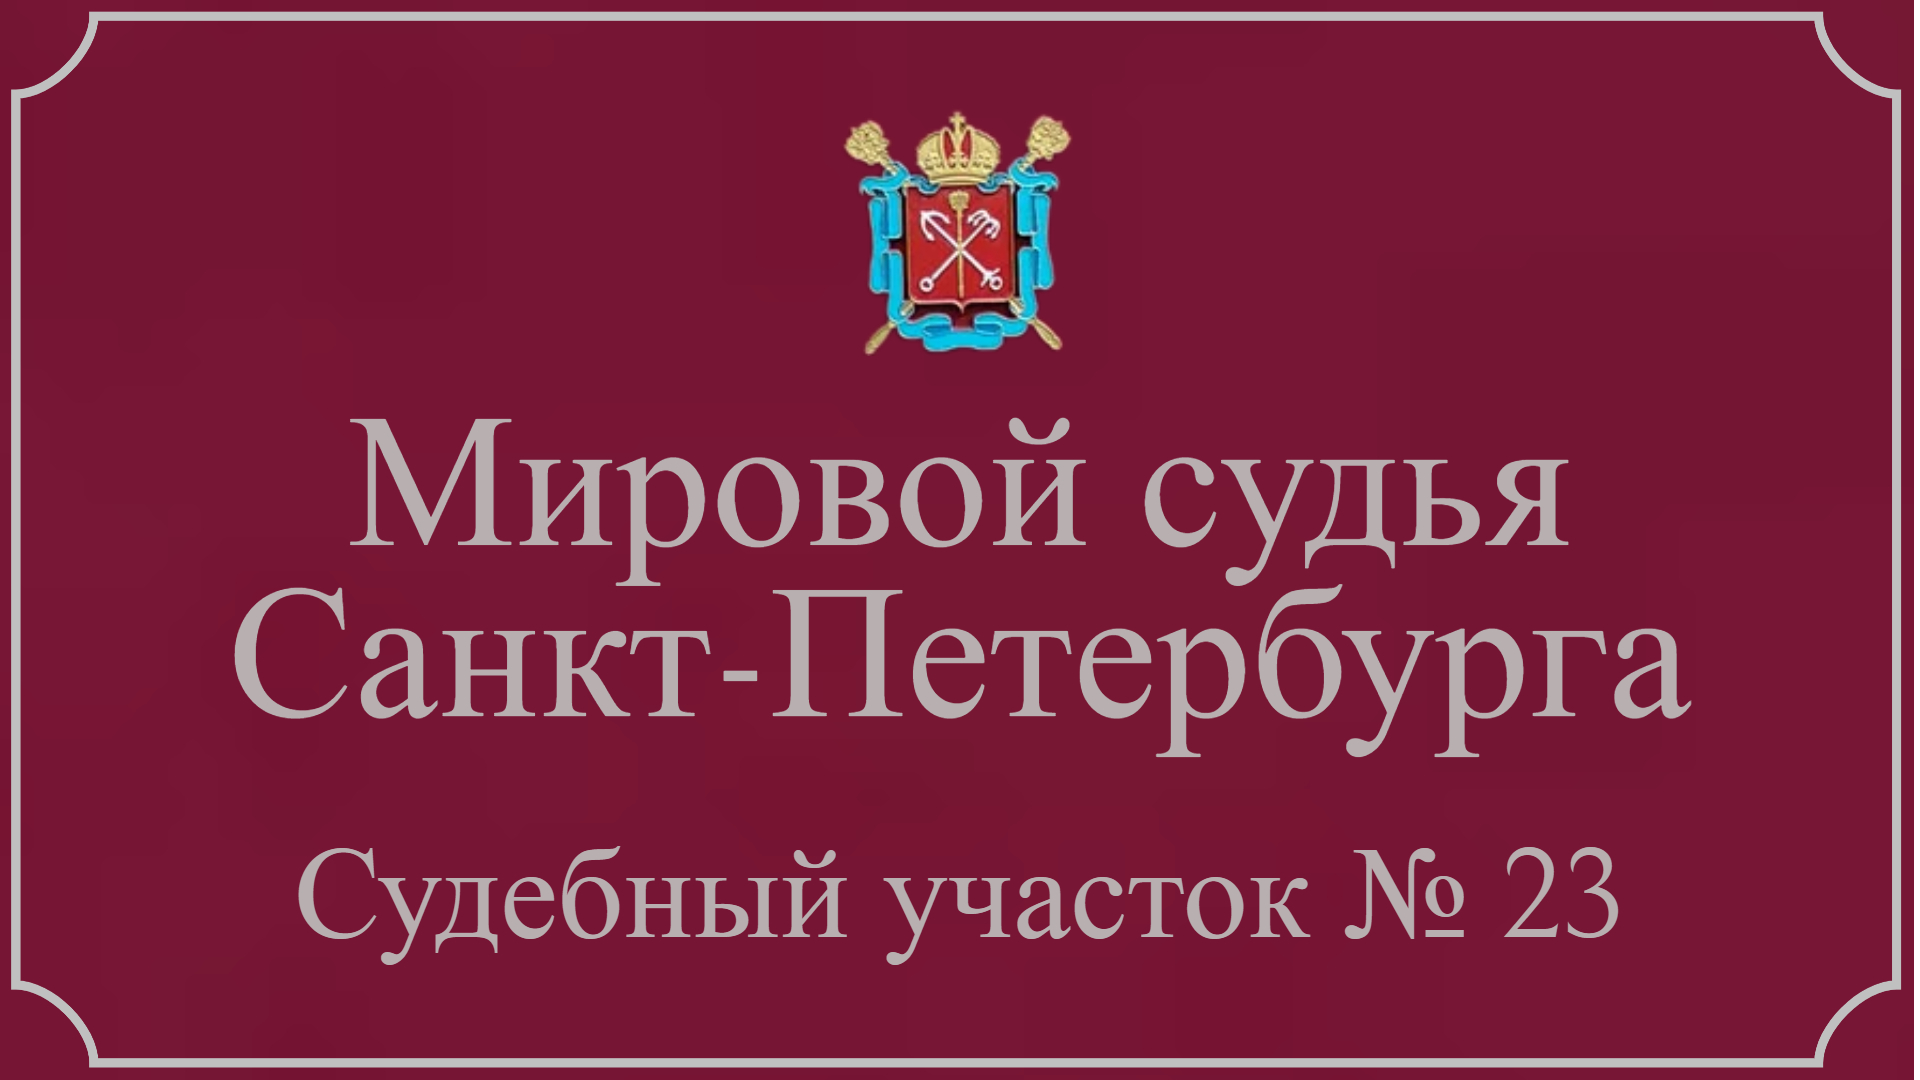 Информация по 23 судебному участку в Санкт-Петербурге.